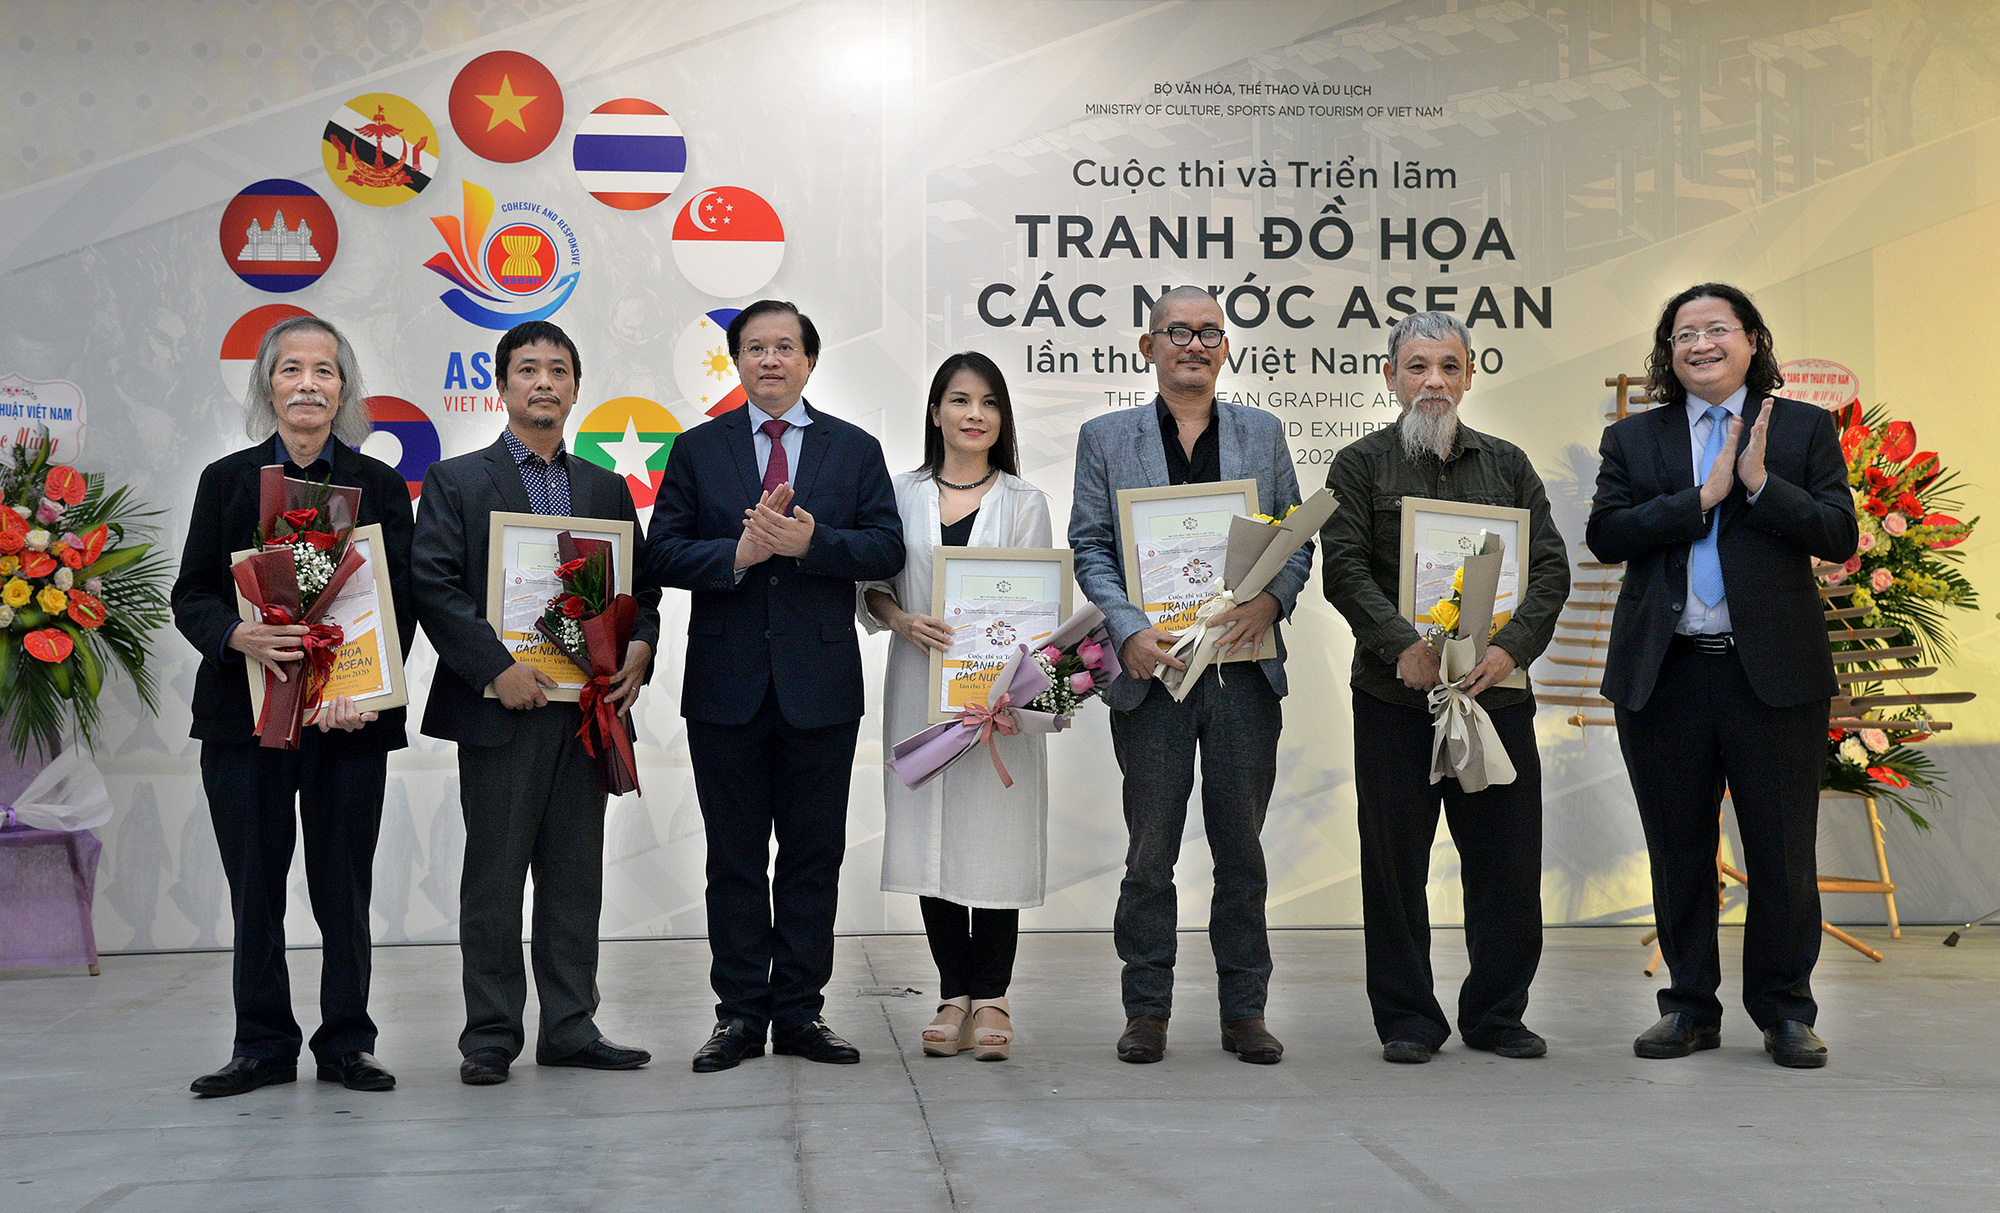 Khai mạc Cuộc thi và Triển lãm Tranh Đồ họa các nước ASEAN 2020 - Ảnh 5.